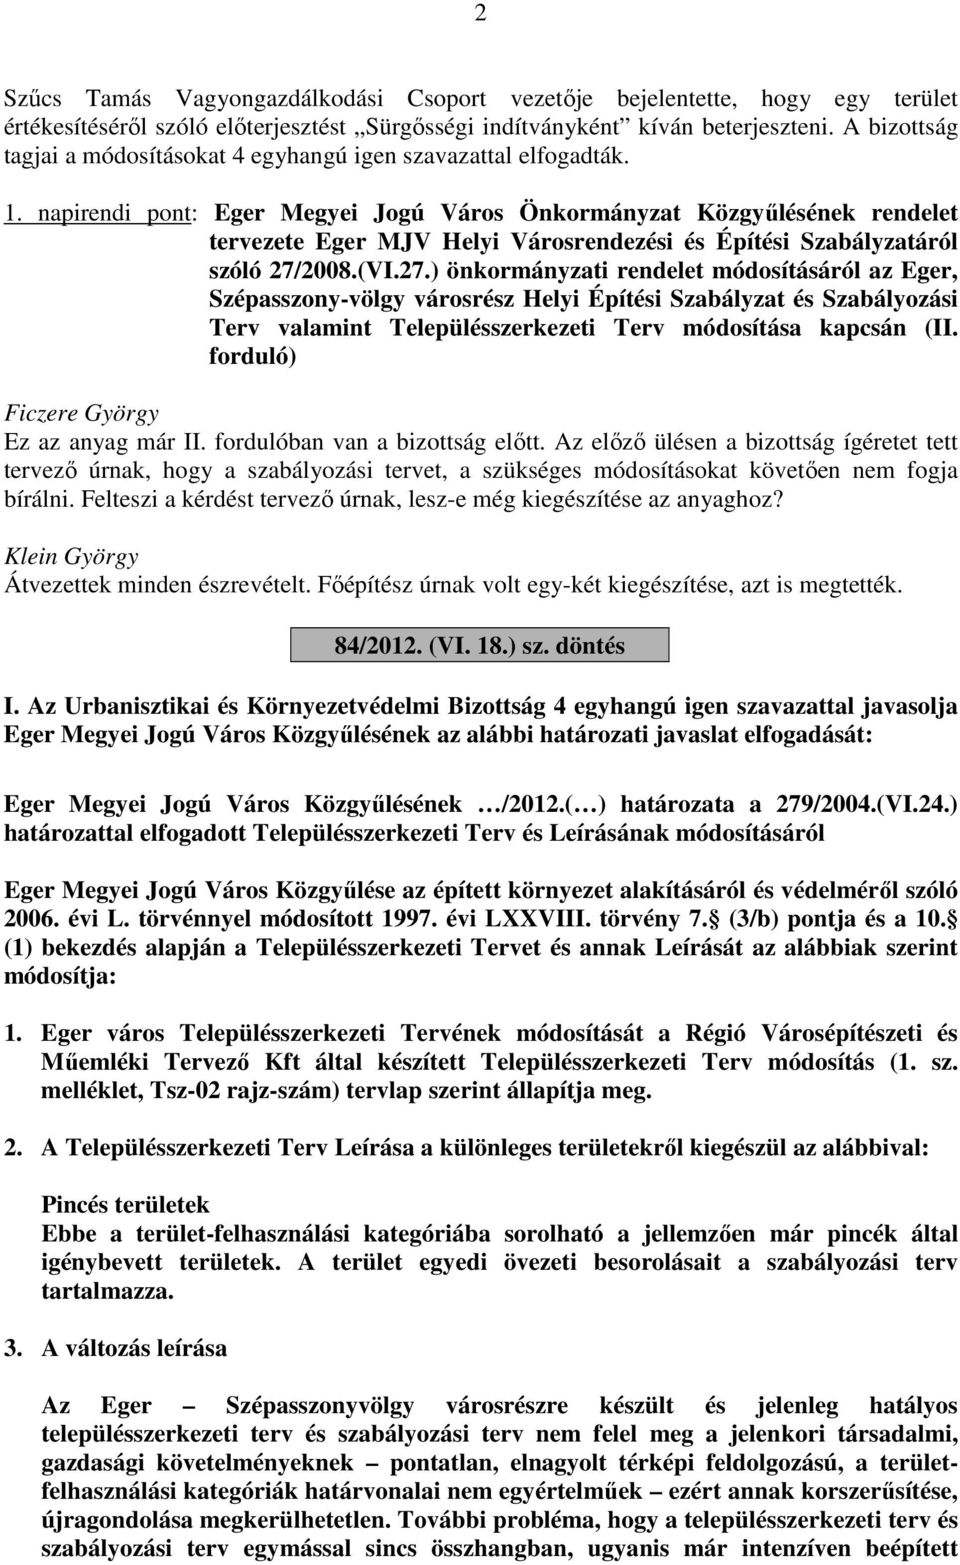 napirendi pont: Eger Megyei Jogú Város Önkormányzat Közgyűlésének rendelet tervezete Eger MJV Helyi Városrendezési és Építési Szabályzatáról szóló 27/